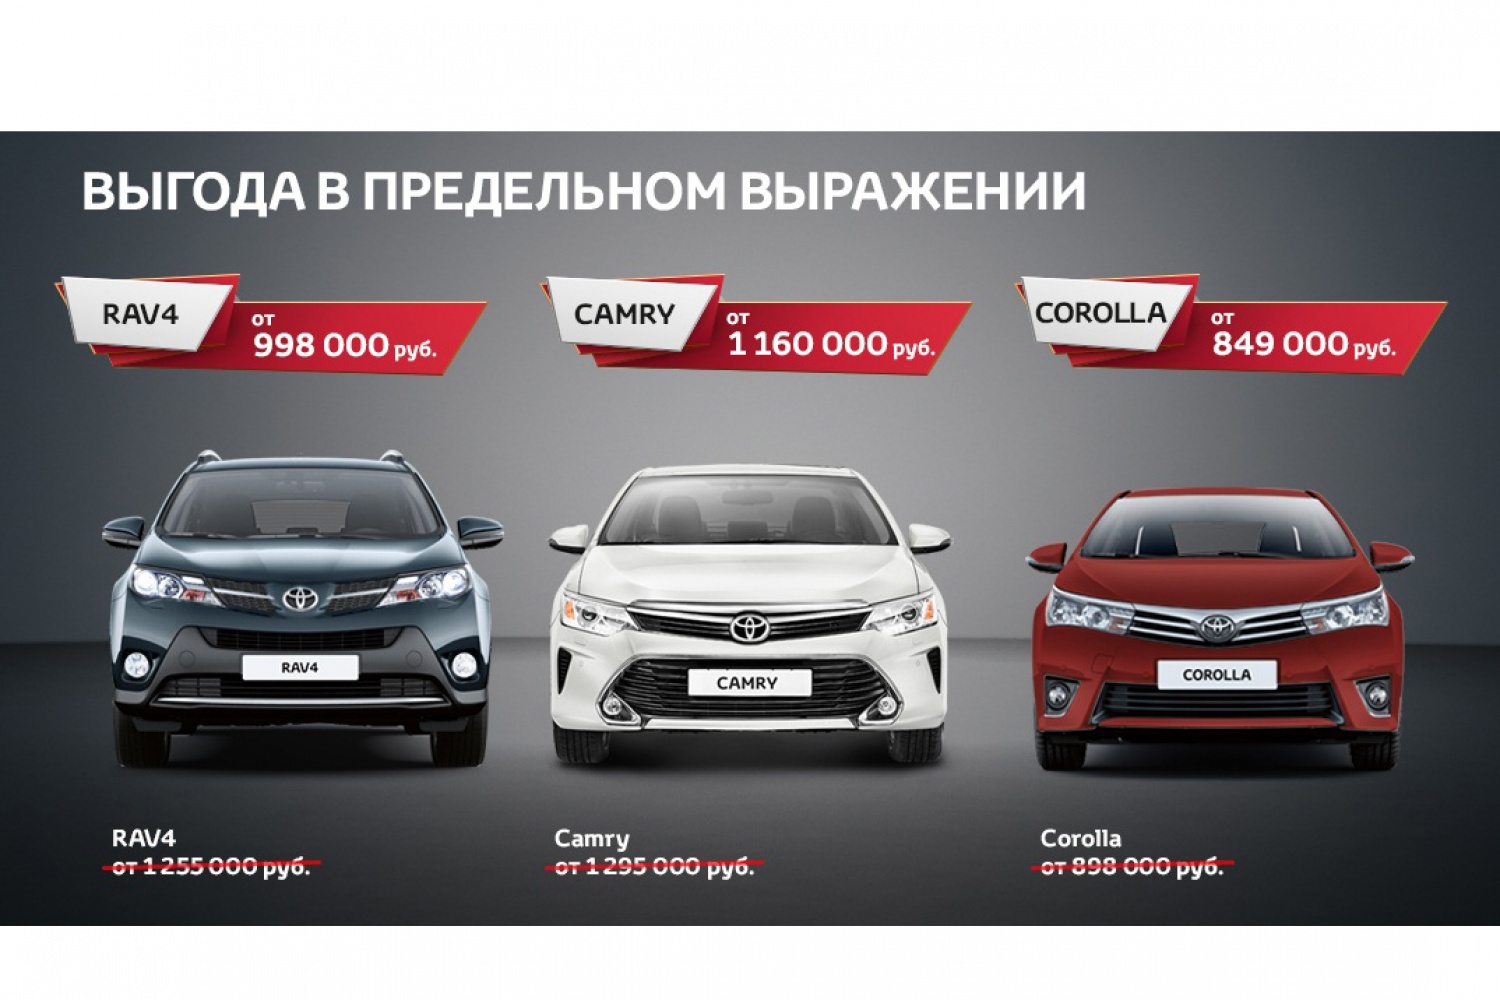 Тойота центр хабаровск модельный ряд. Реклама Тойота. Реклама Toyota Россия. Toyota rav4 и Toyota Camry. Реклама Тойота Камри.